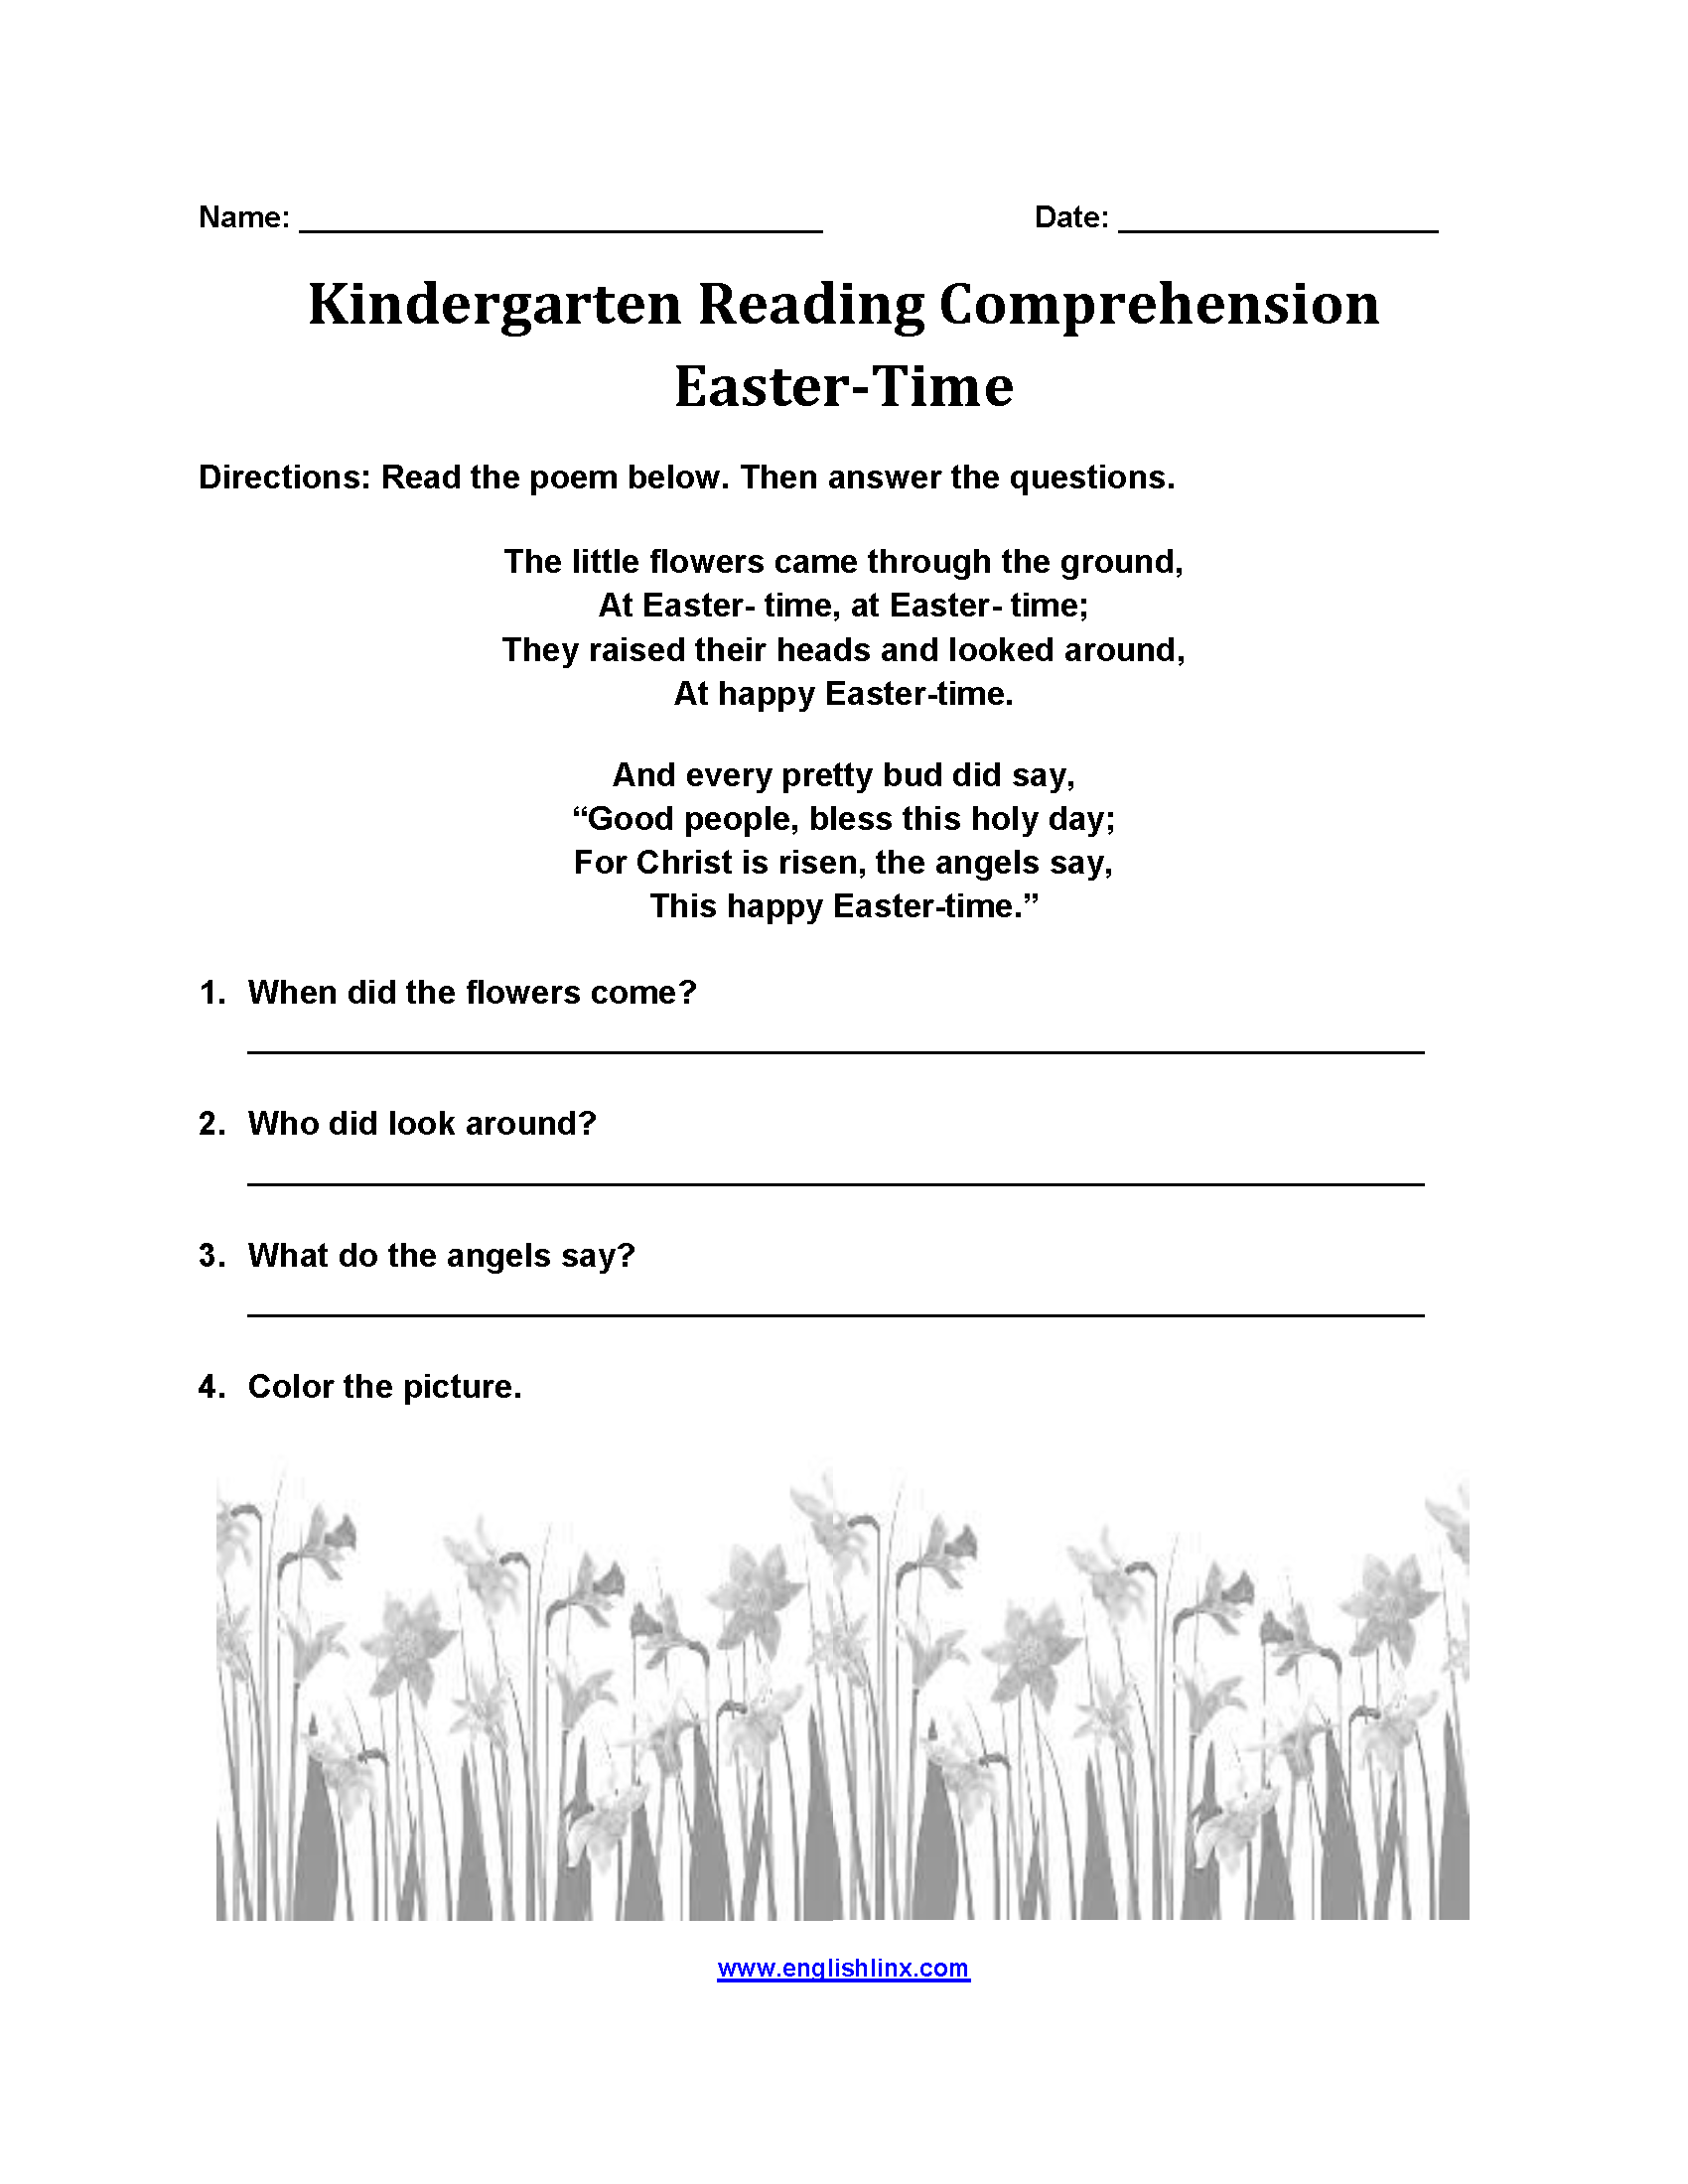 Easter Time Kindergarten Reading Comprehension Worksheets